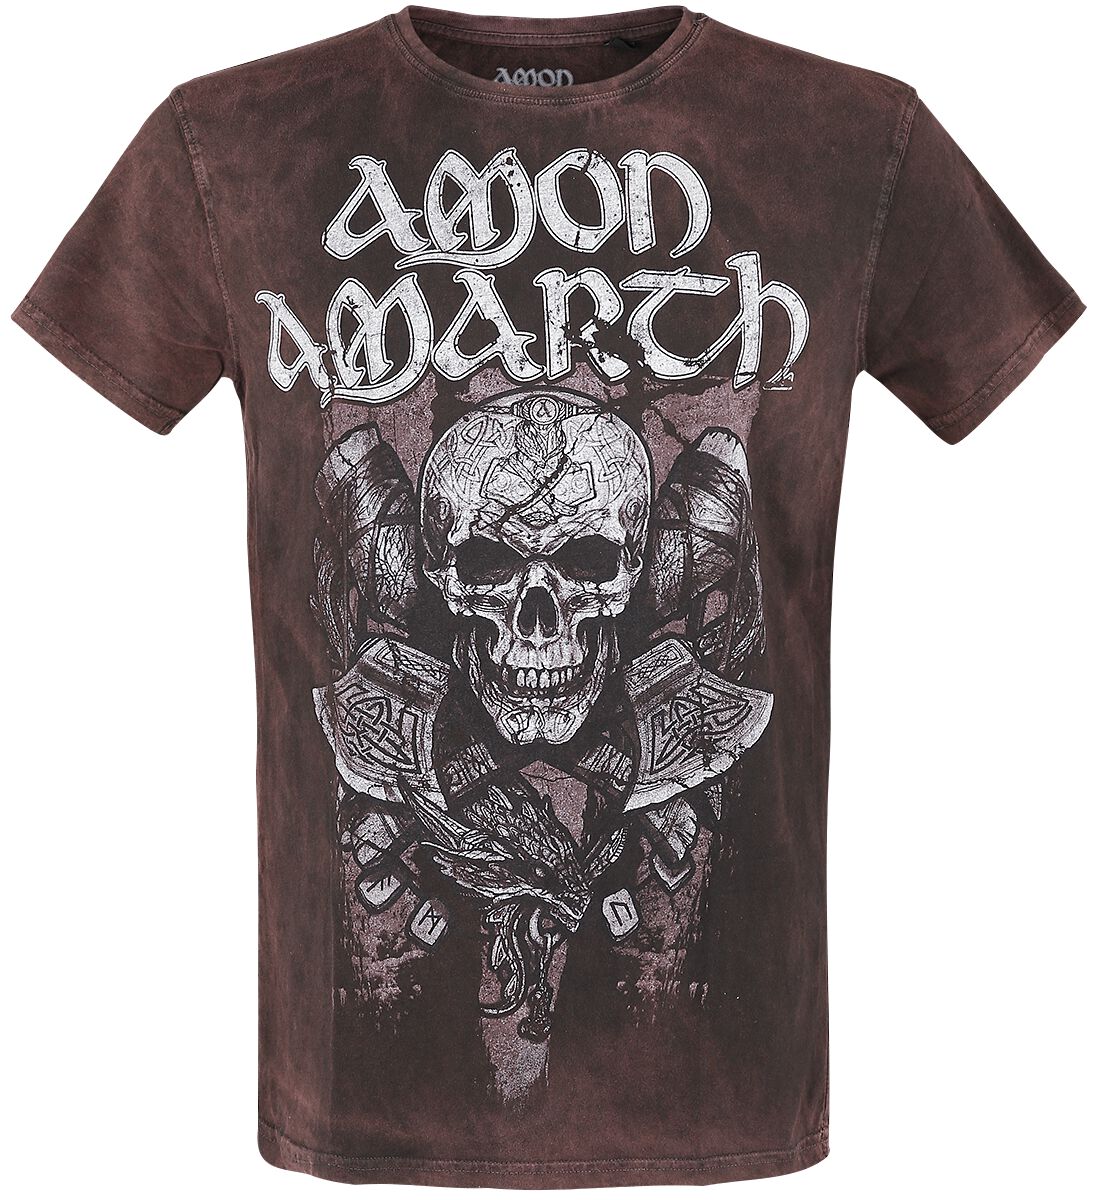 Amon Amarth T-Shirt - Carved Skull - S bis L - für Männer - Größe M - braun  - EMP exklusives Merchandise!